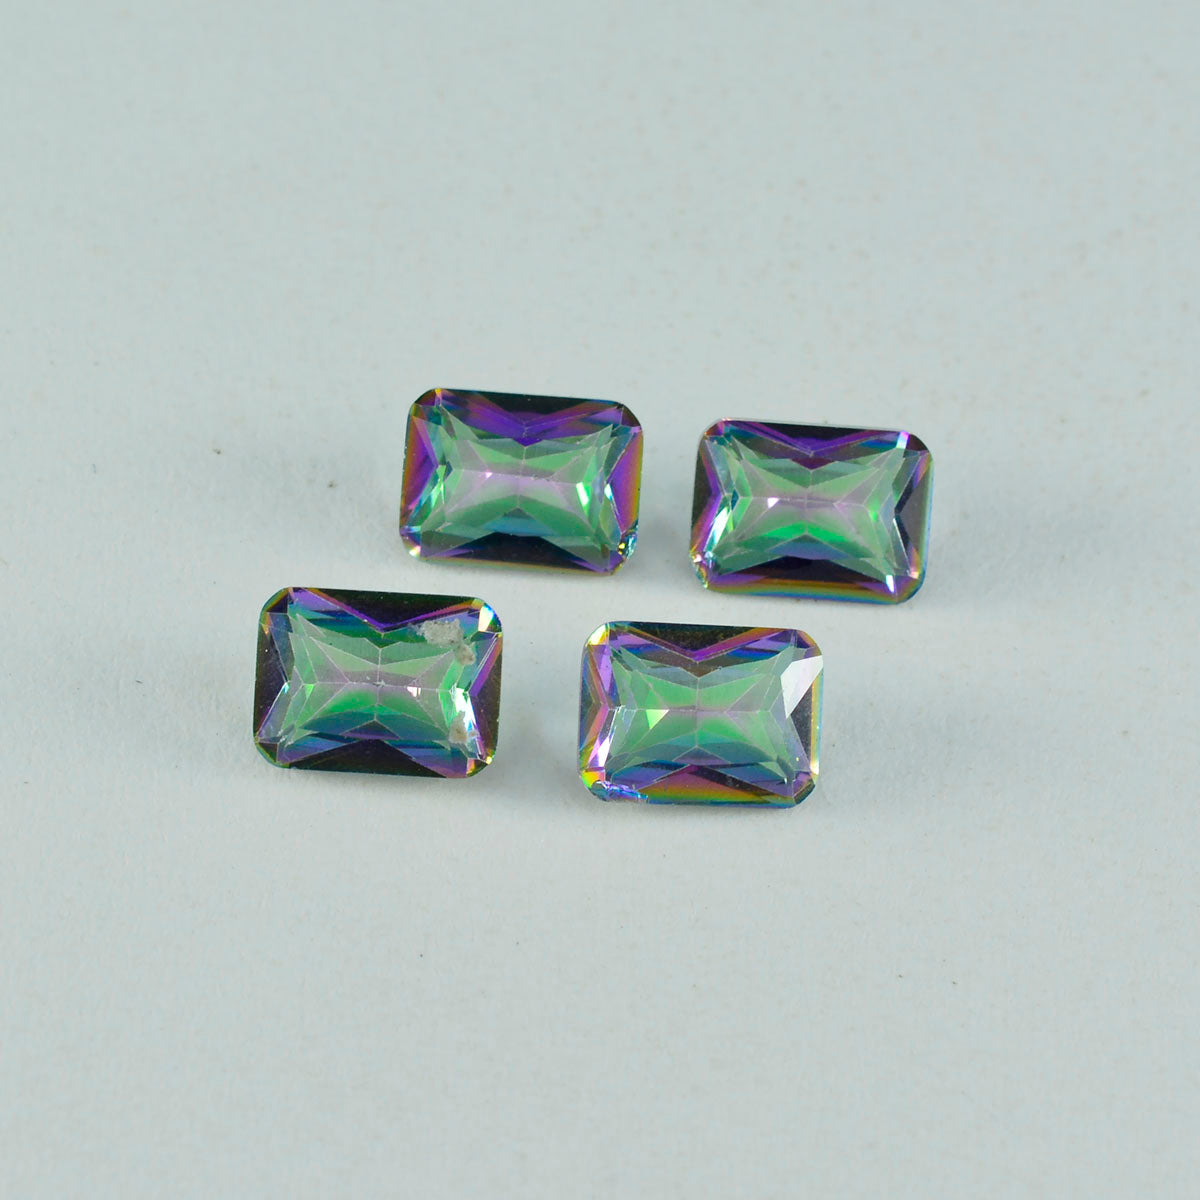 Riyogems 1 pièce de quartz mystique multicolore à facettes 7x9mm forme octogonale belle qualité gemme en vrac